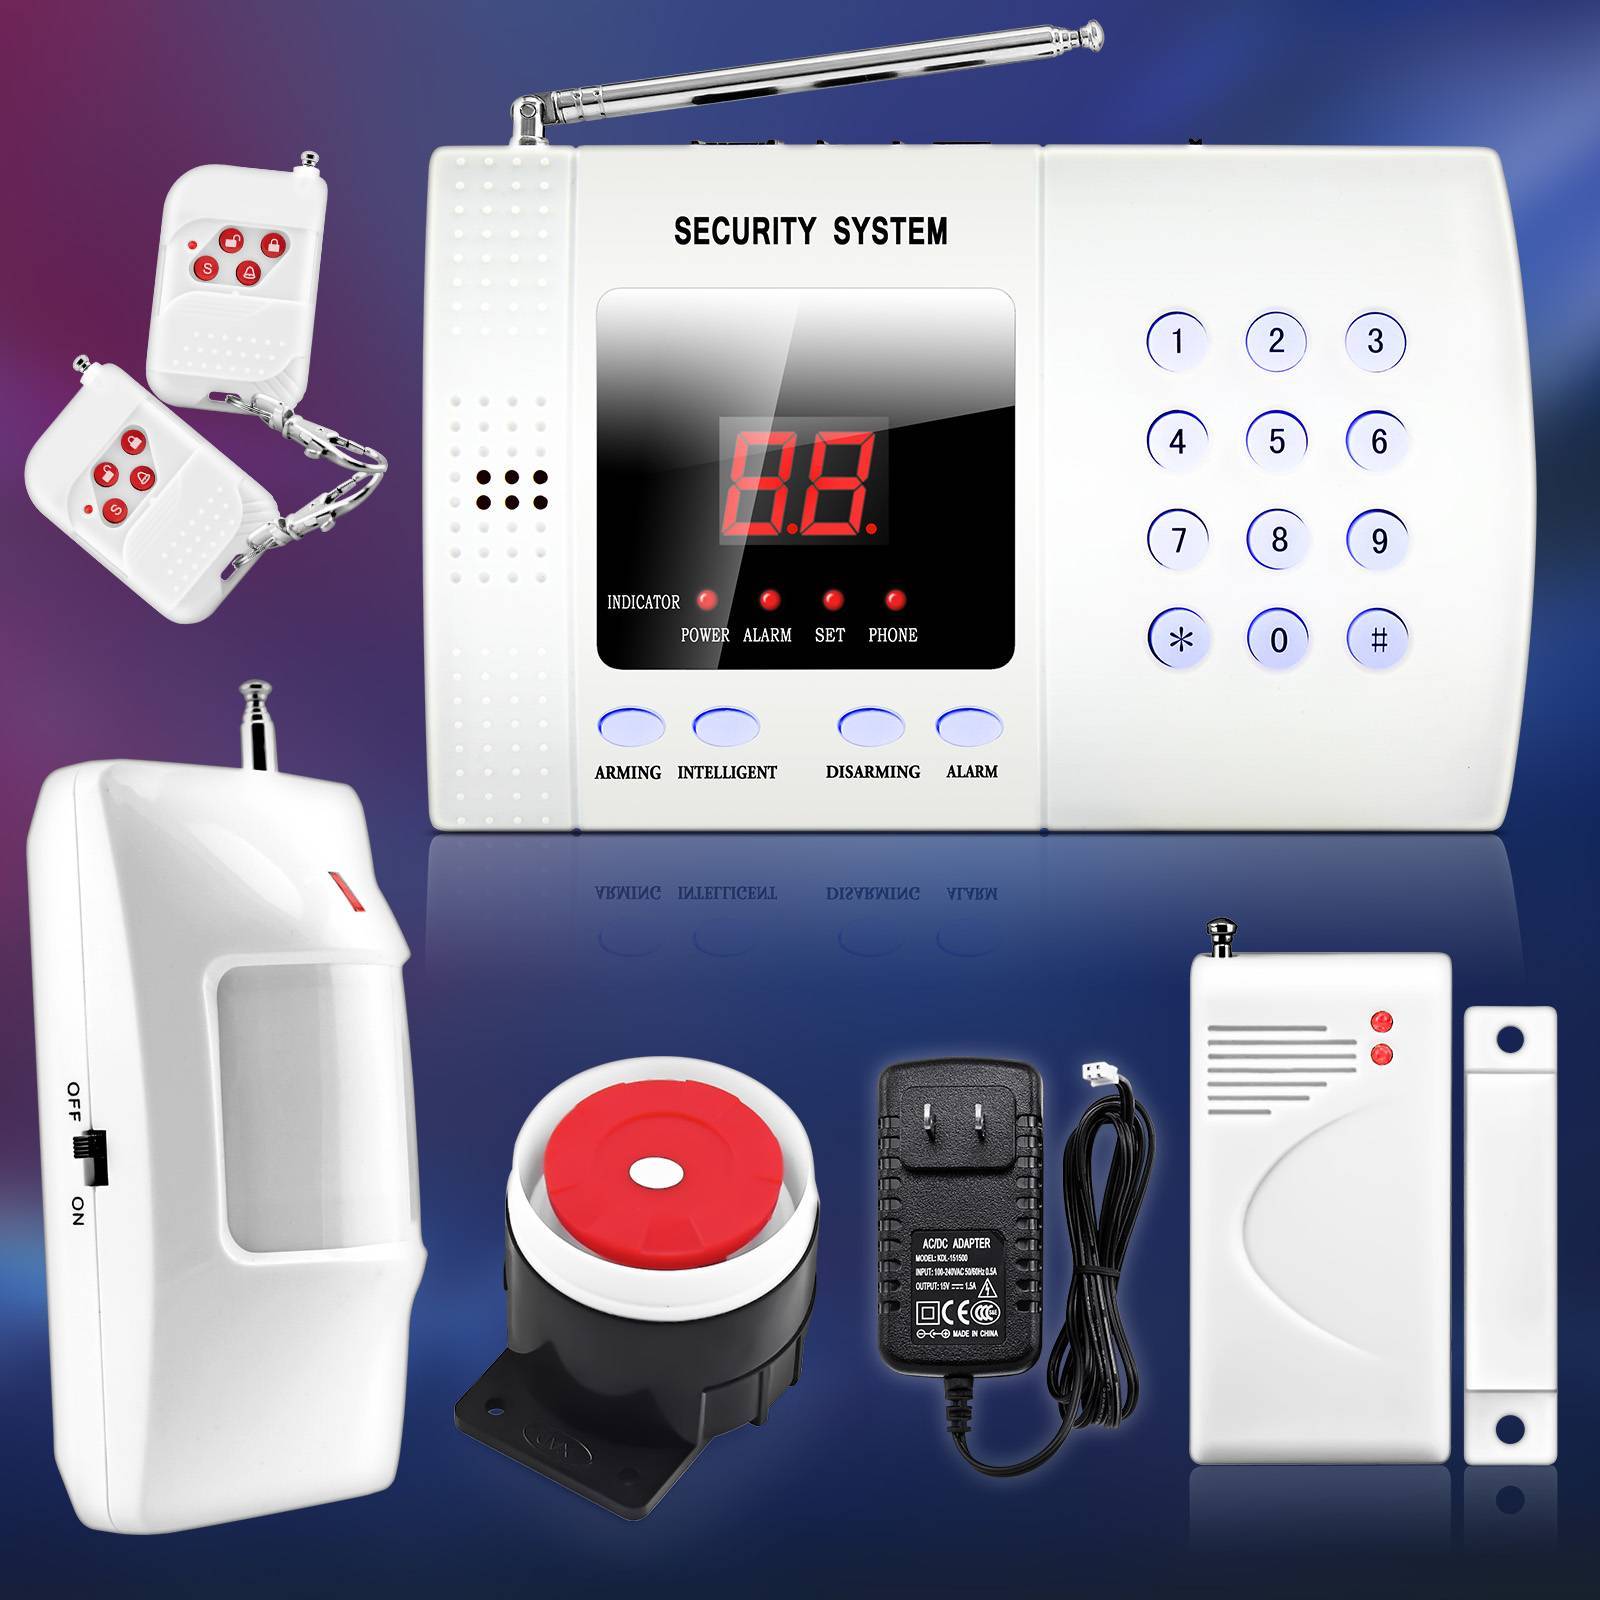 Гсм телефоны. Охранная GSM сигнализация Security Alarm System. Охранная сигнализация Smart Unit gsm30a. GSM Smart Alarm System сигнализации. ASC-101 (охранная сигнализация).